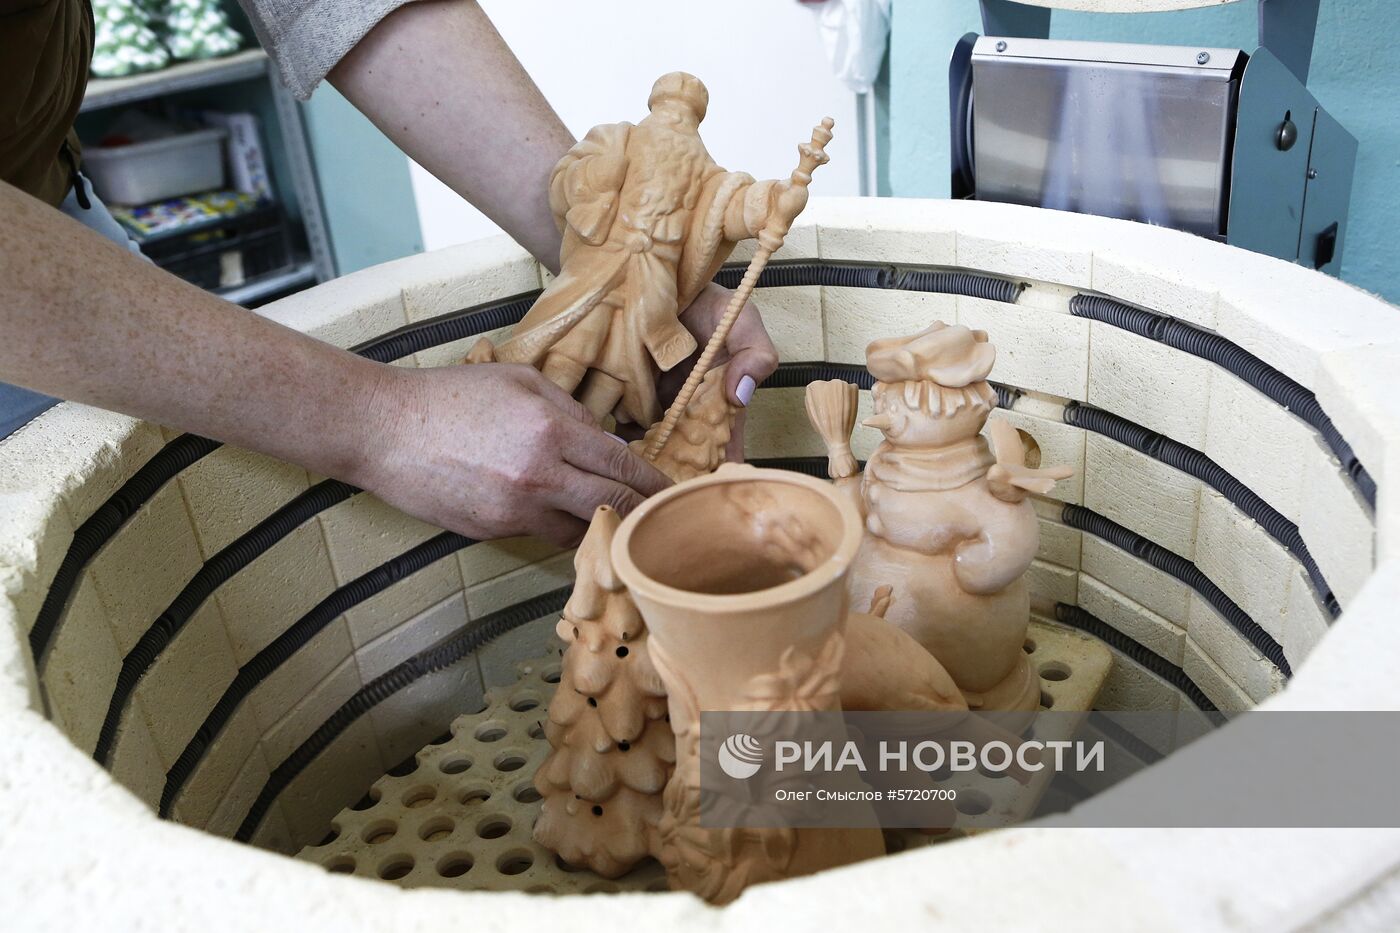 Производство елочных игрушек в Ярославле